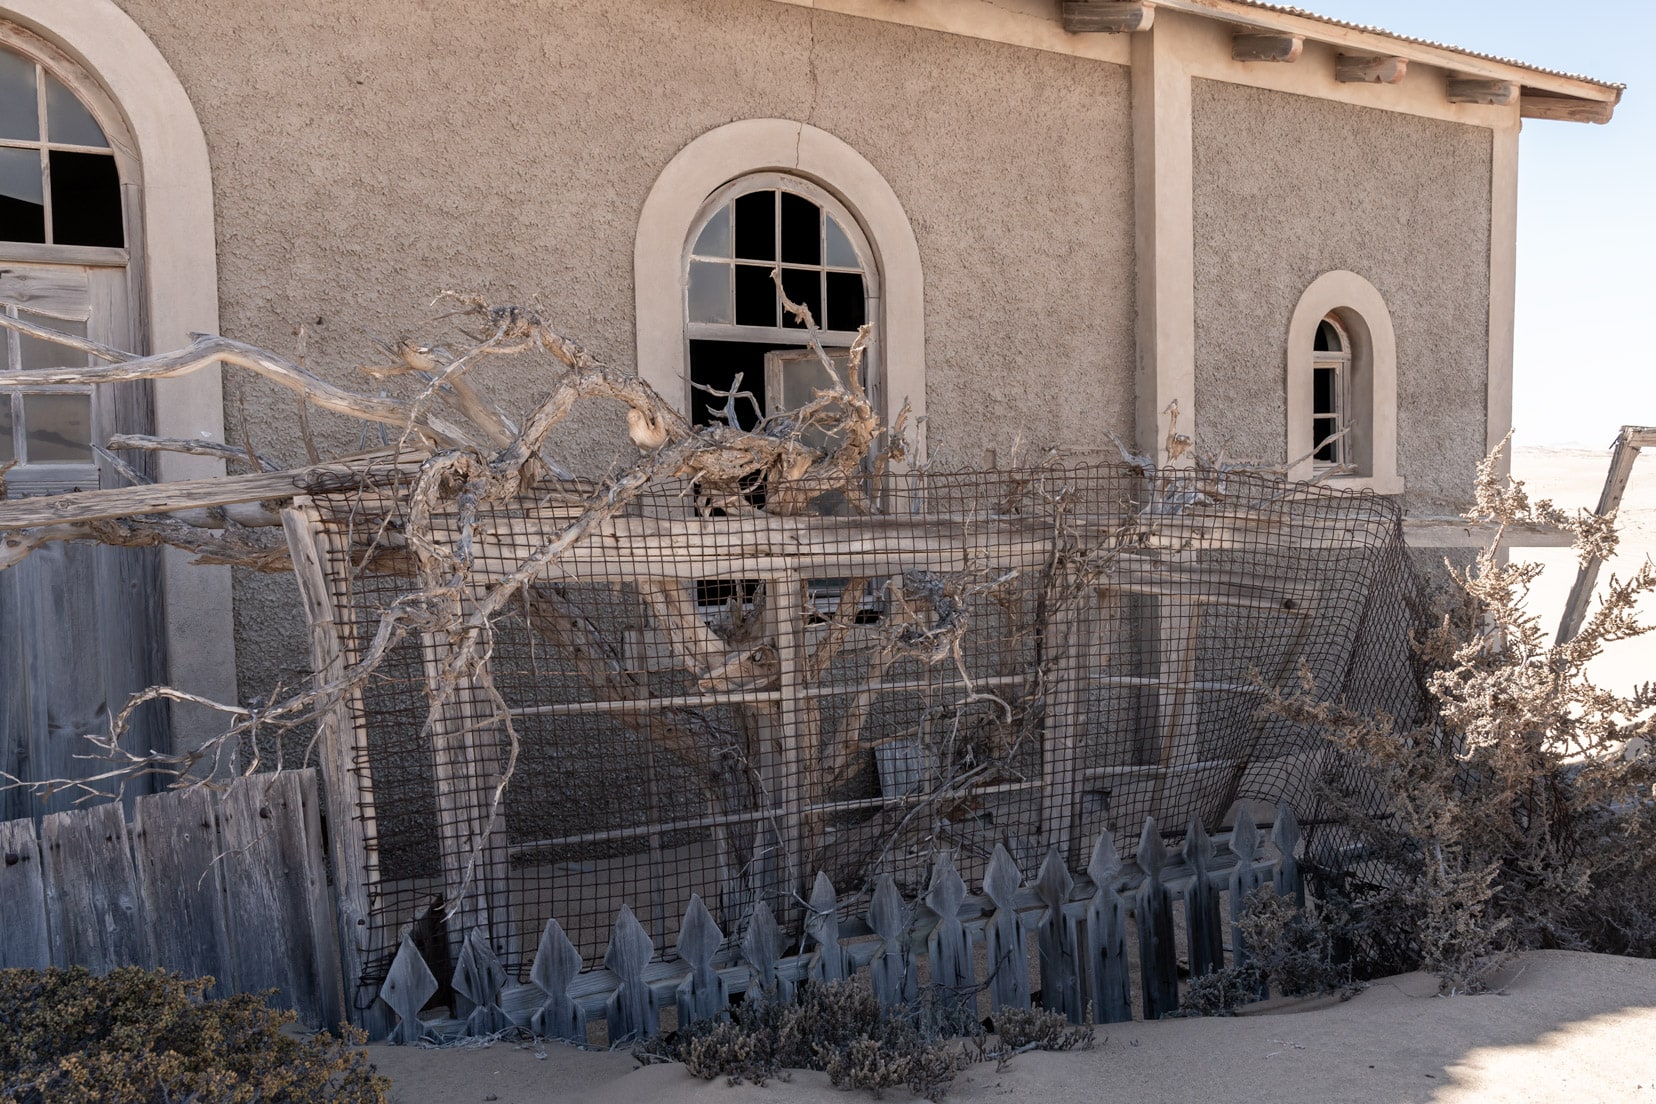 half-buried-picket-fence at Kolmanskop ghost town